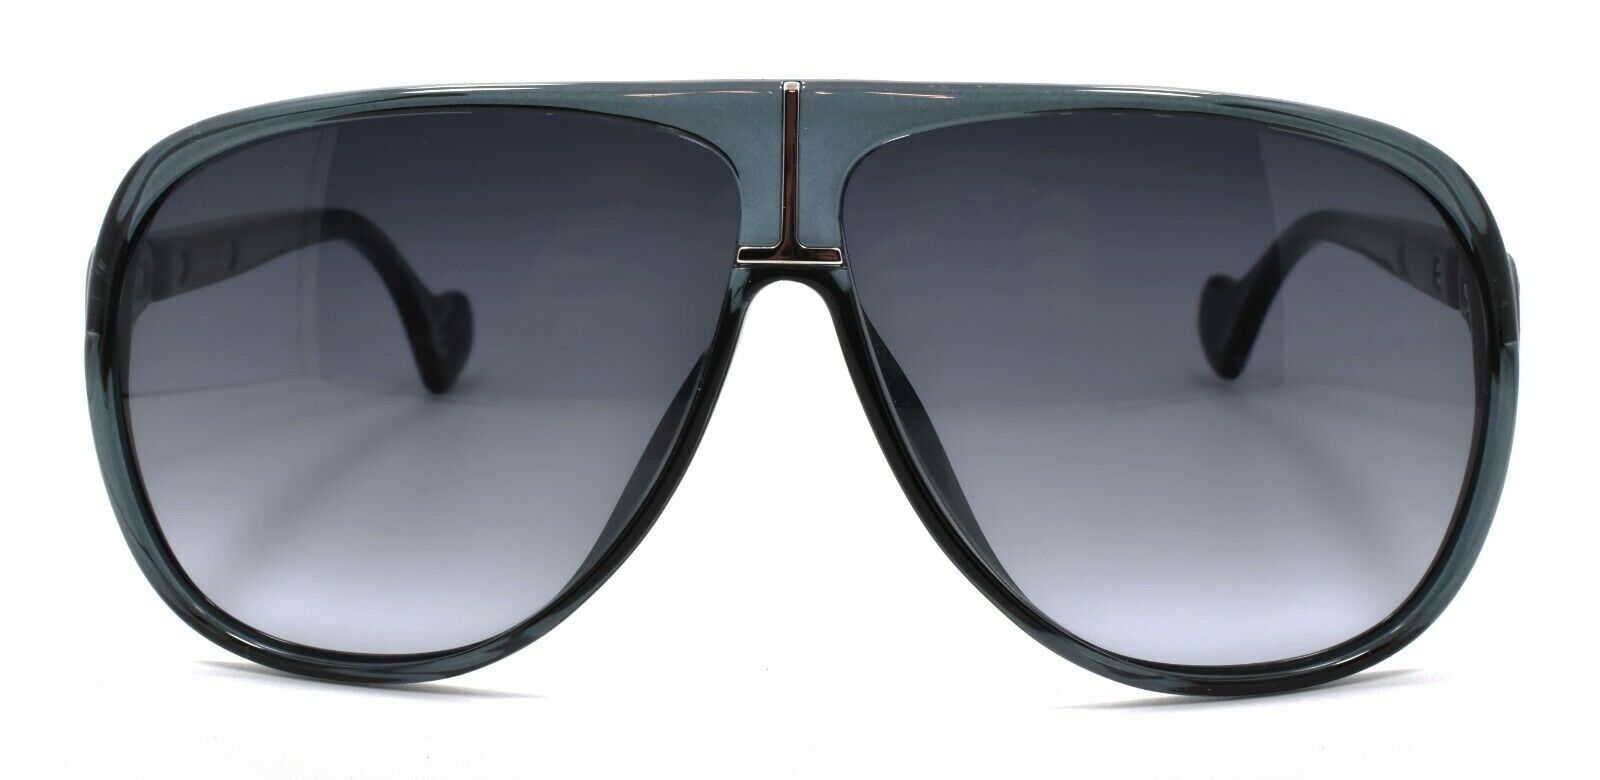 2-TOMMY HILFIGER TH Zendaya GEG90 Women's Sunglasses Aviator Blue / Grey Gradient-716736155555-IKSpecs